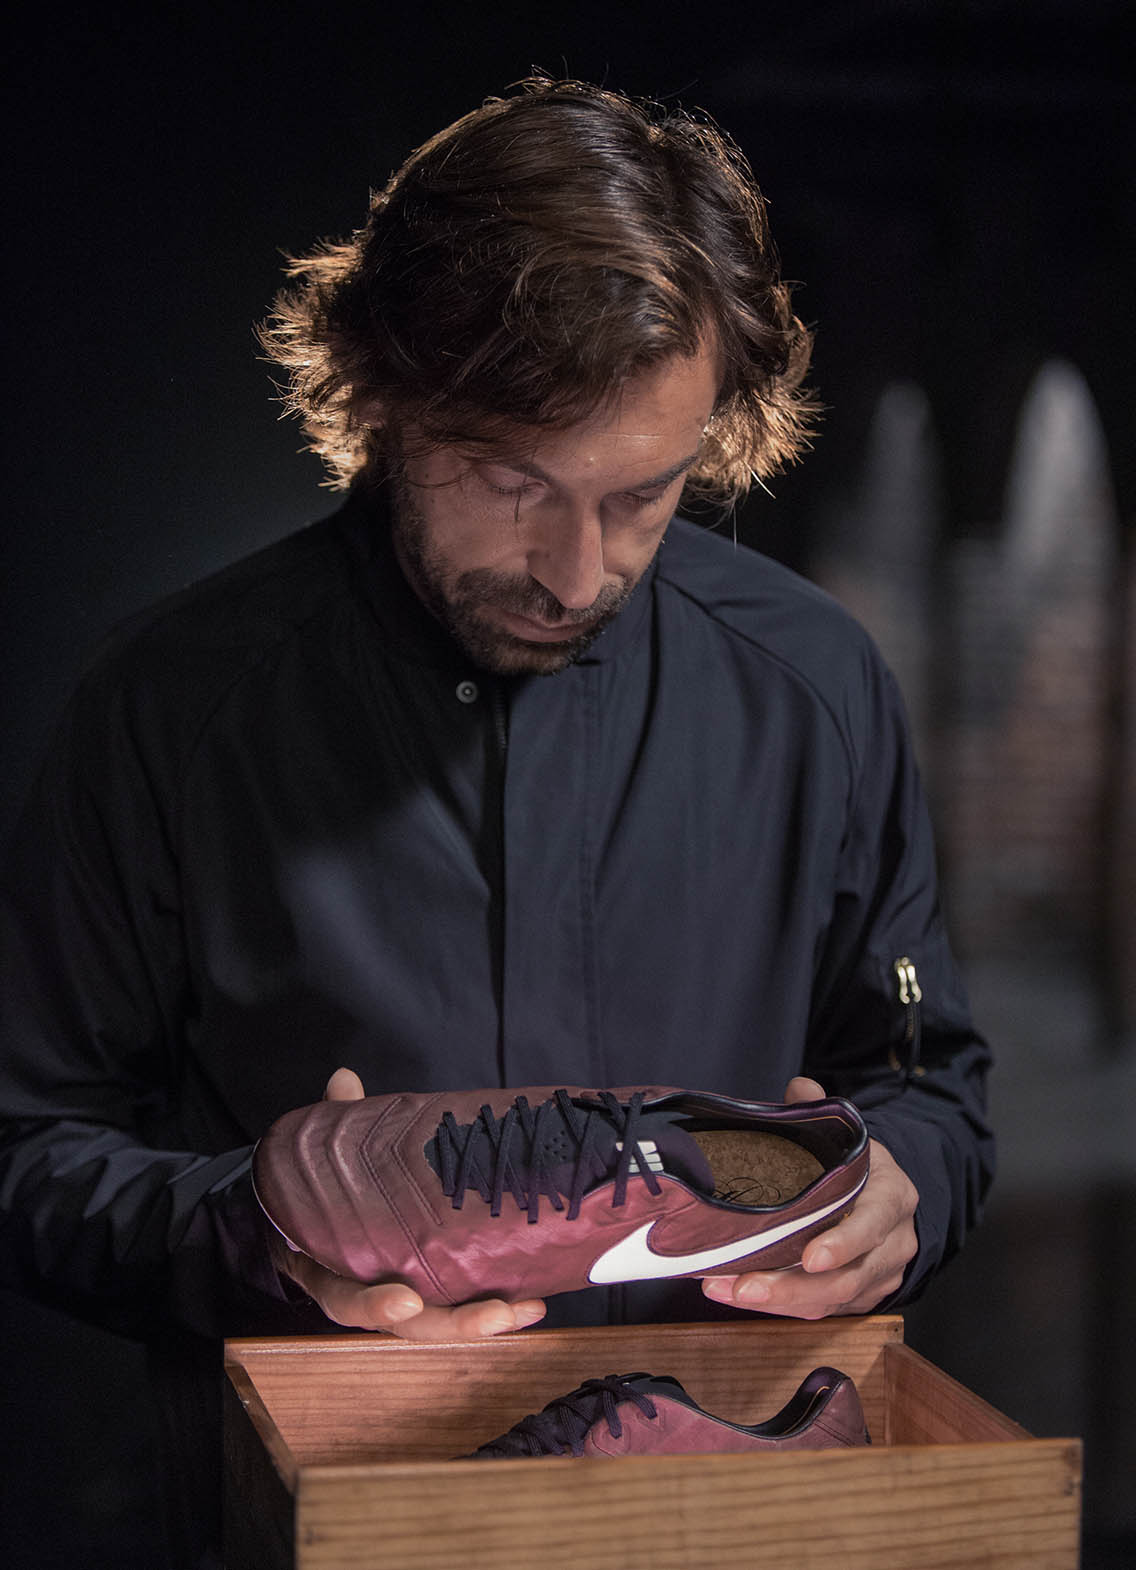 Llorar psicología congelado Limited Edition Nike Tiempo Legend Pirlo Boots Released - Footy Headlines